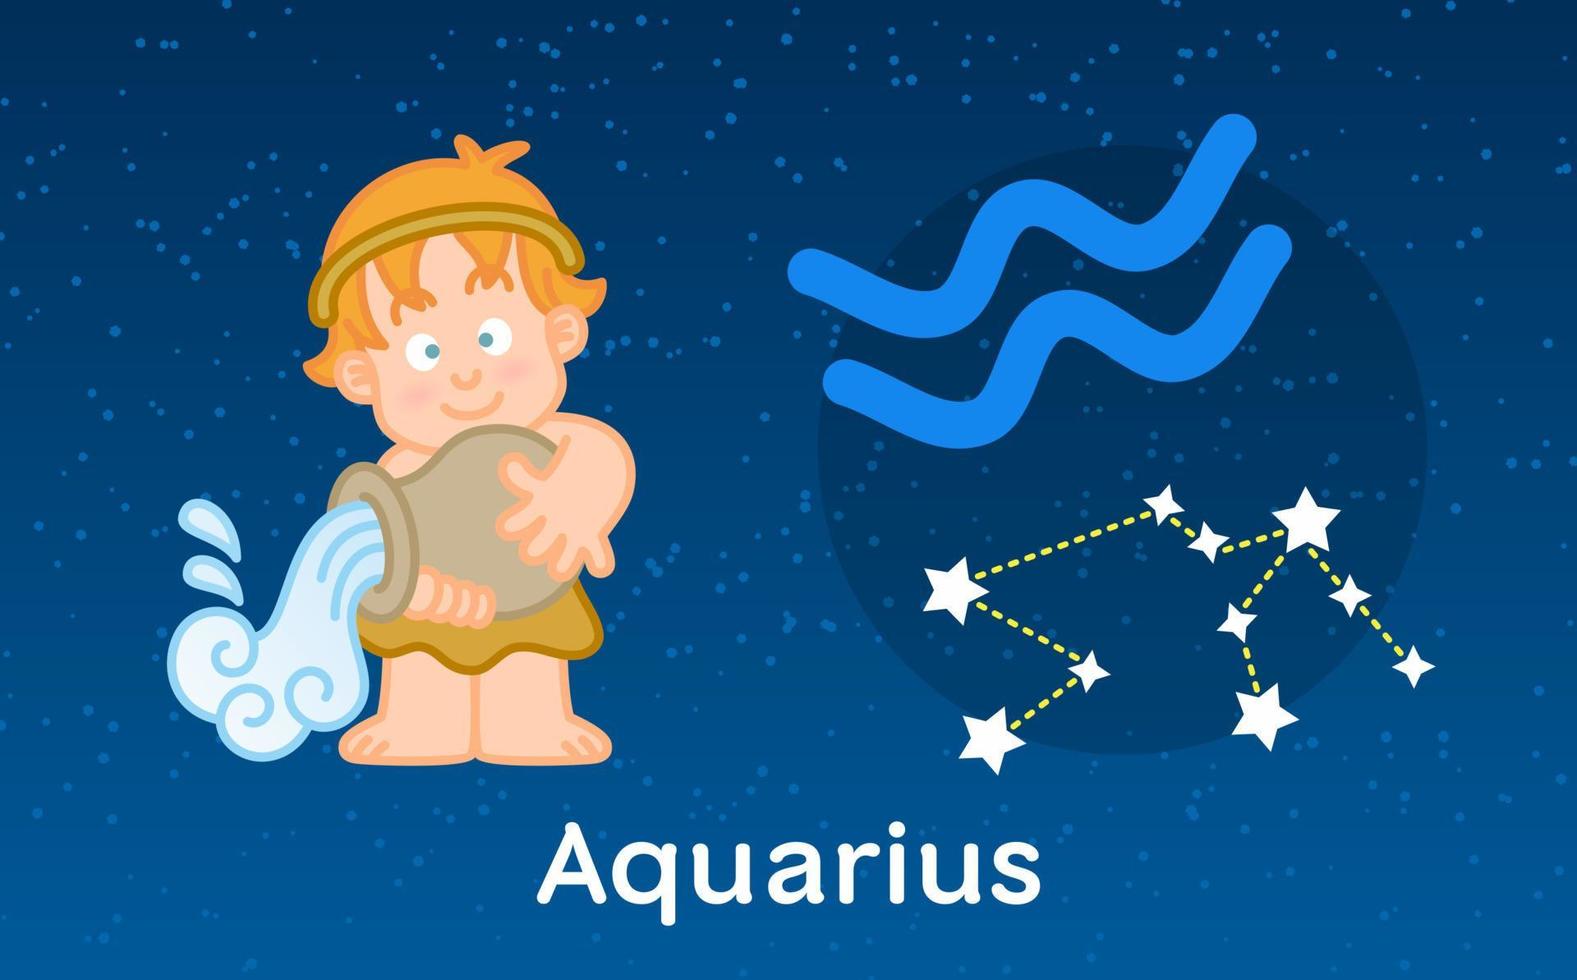 astrologia de desenho animado bonito do zodíaco de aquário com constelações. ilustração vetorial no fundo do céu de estrelas vetor